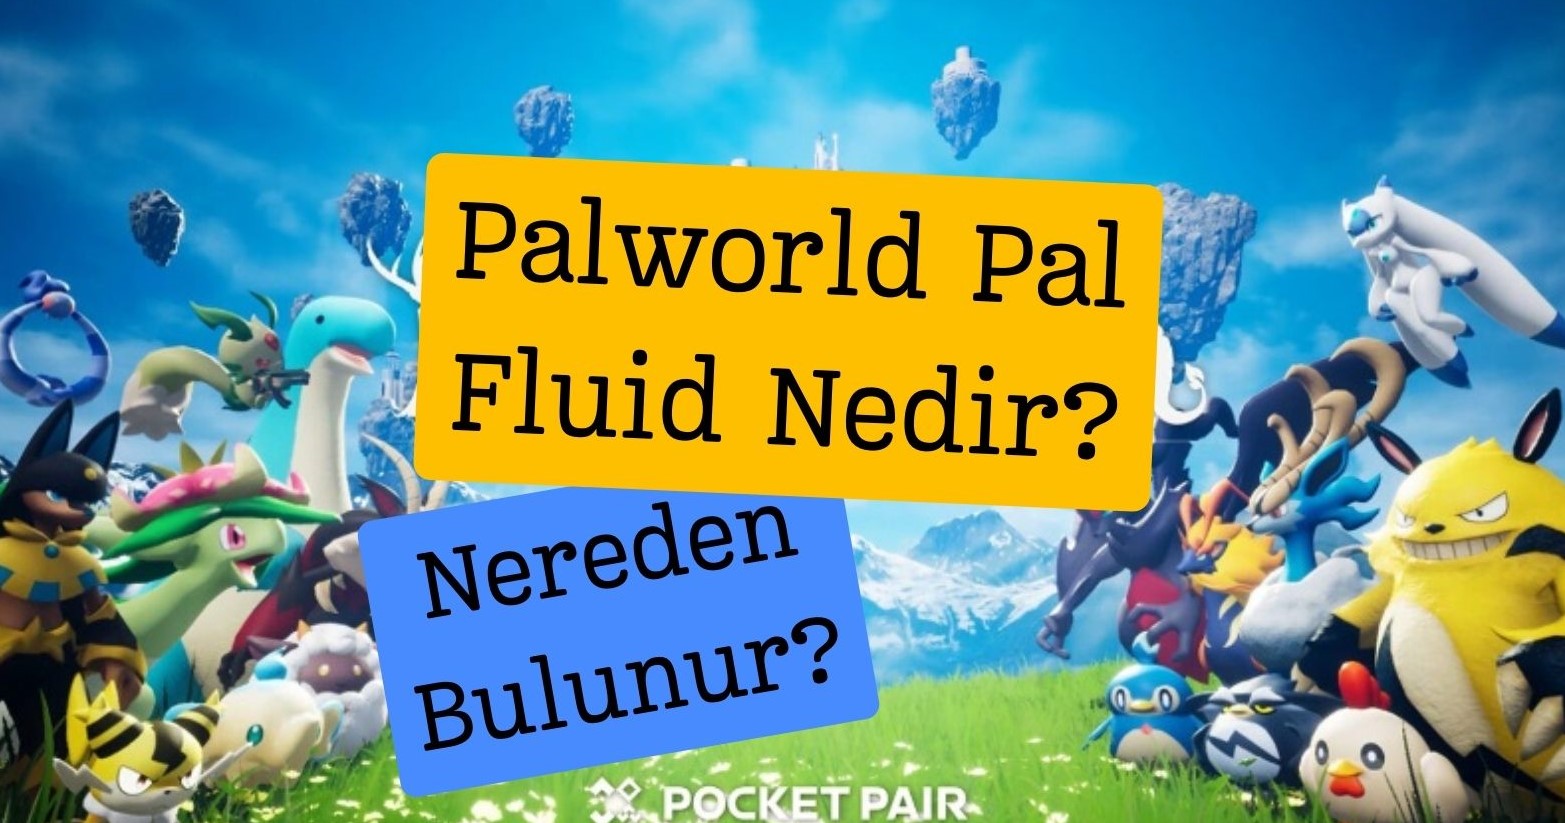 Palworld Pal Fluid Nedir? Nereden Bulunur? Nerede Satılır?